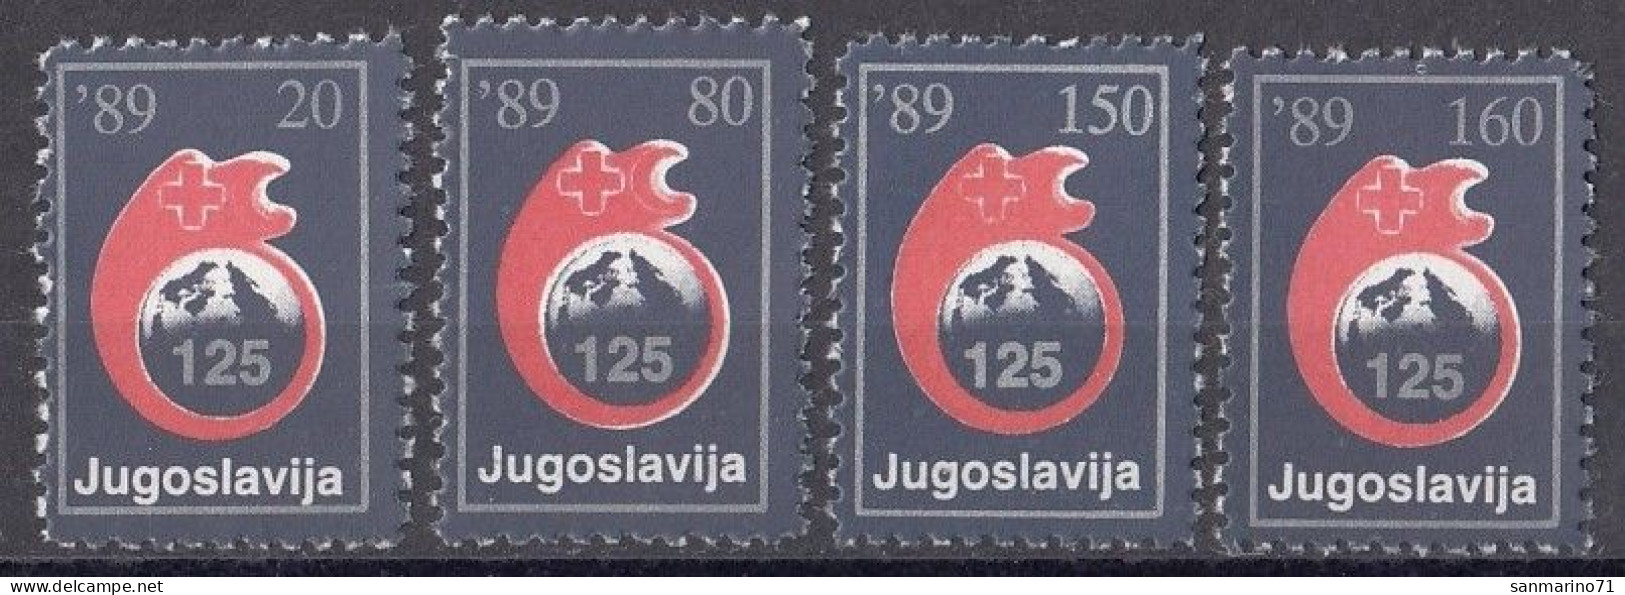 YUGOSLAVIA 166-169,postage Due,unused - Postage Due